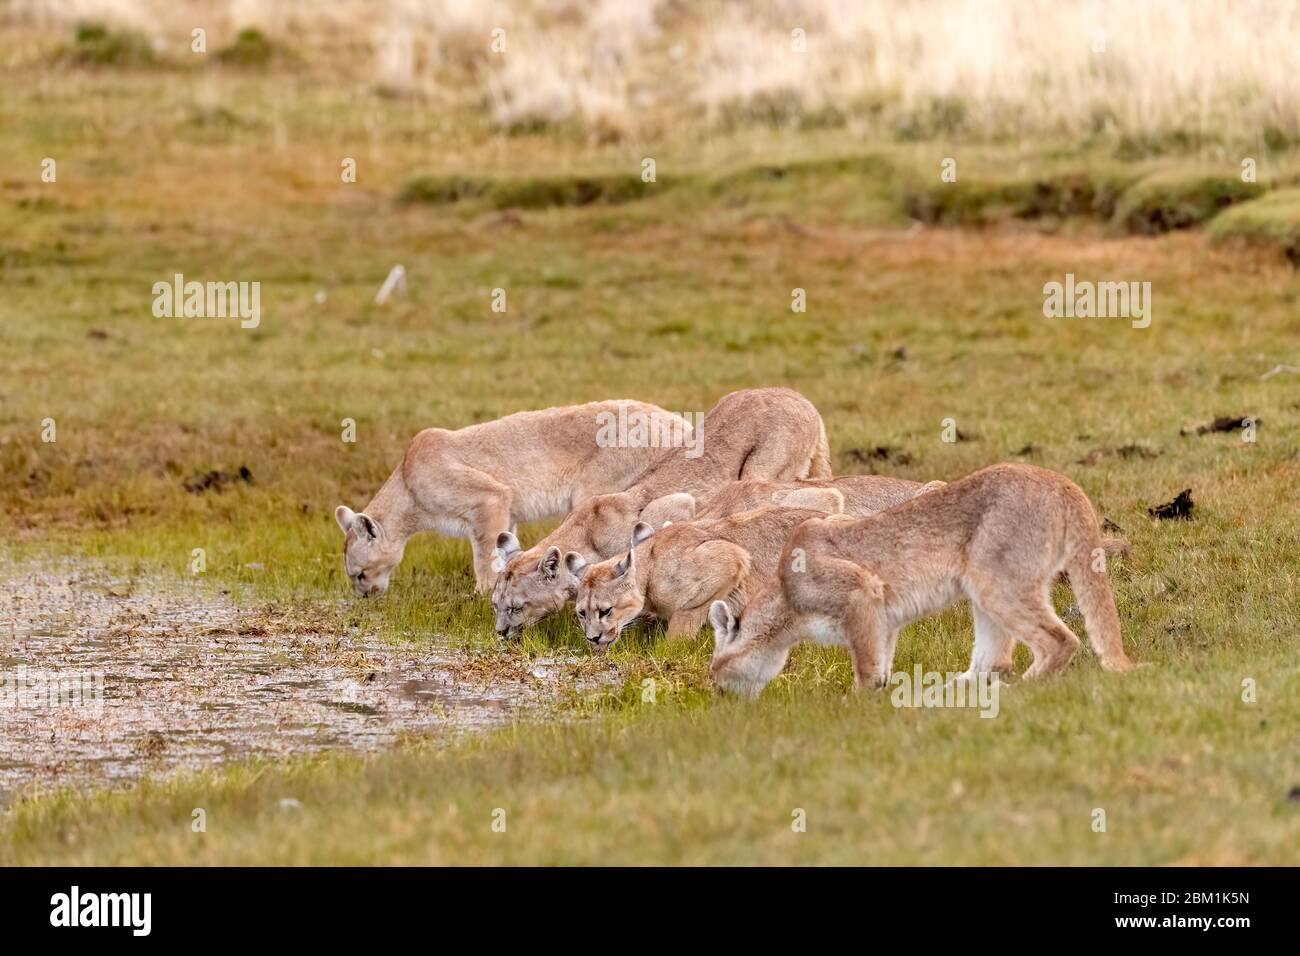 Familie von fünf Pumas, Mutter und Jugendliche, aus einem Pool trinken. Auch bekannt als Cougar oder Berglöwe. Stockfoto